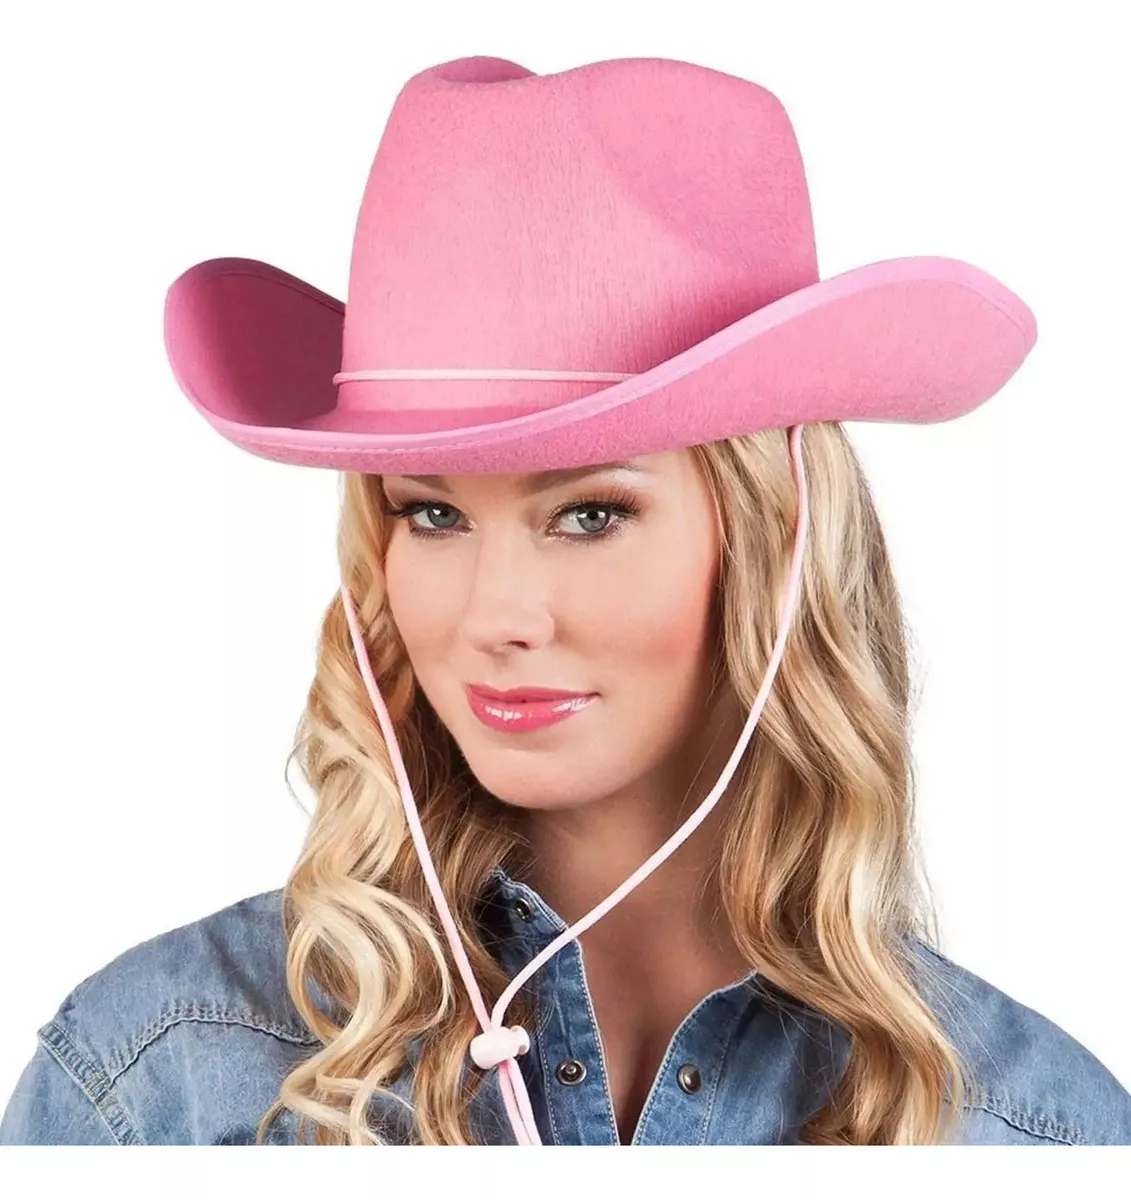 Terceira imagem para pesquisa de chapeu cowboy rosa